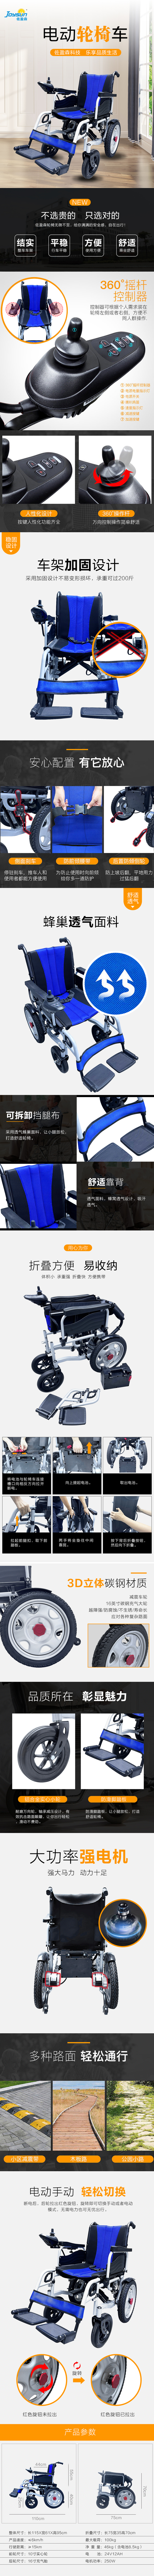 电动轮椅车01款(图1)